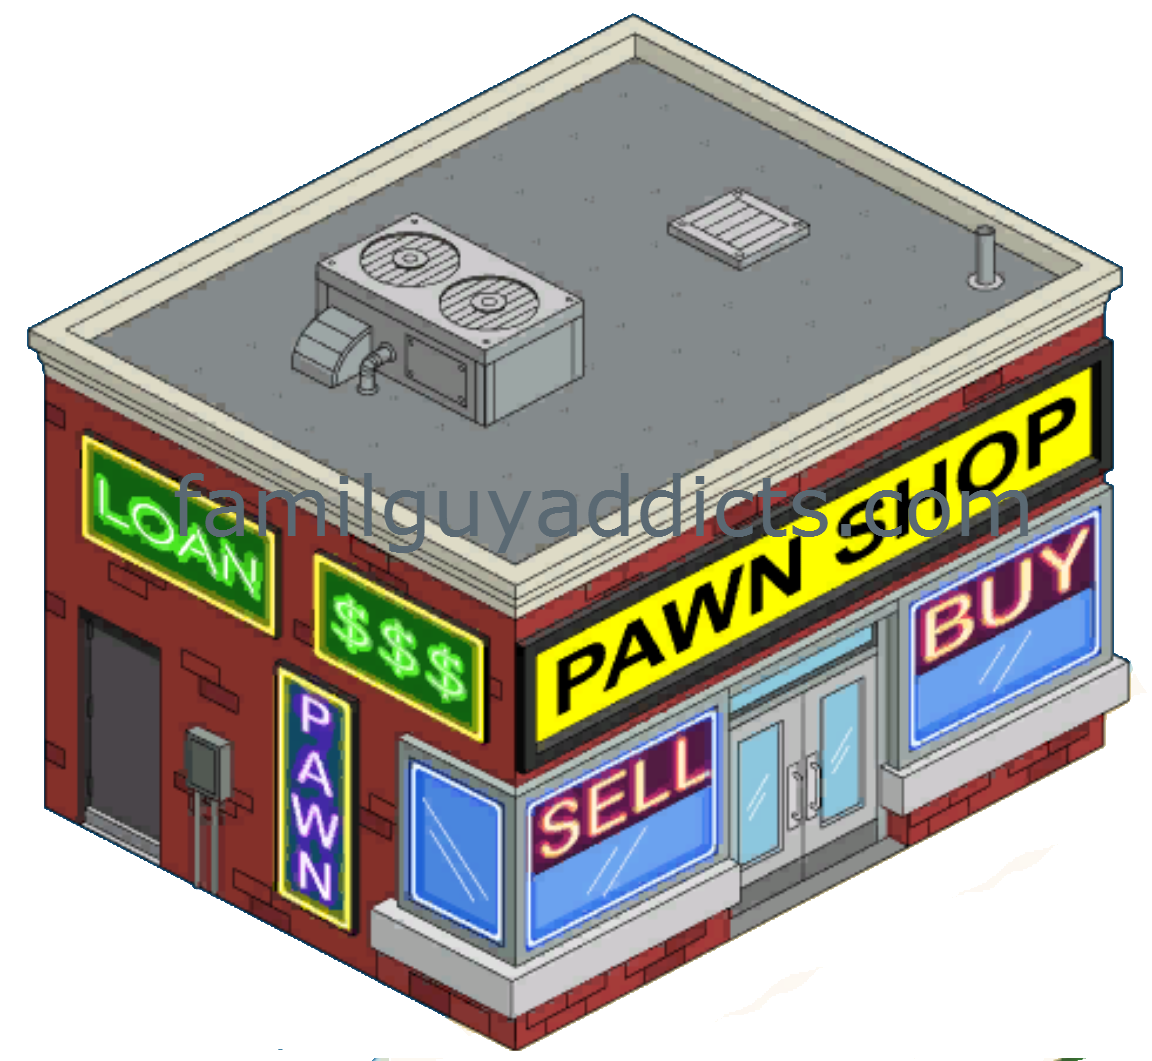 shop clipart pawn shop